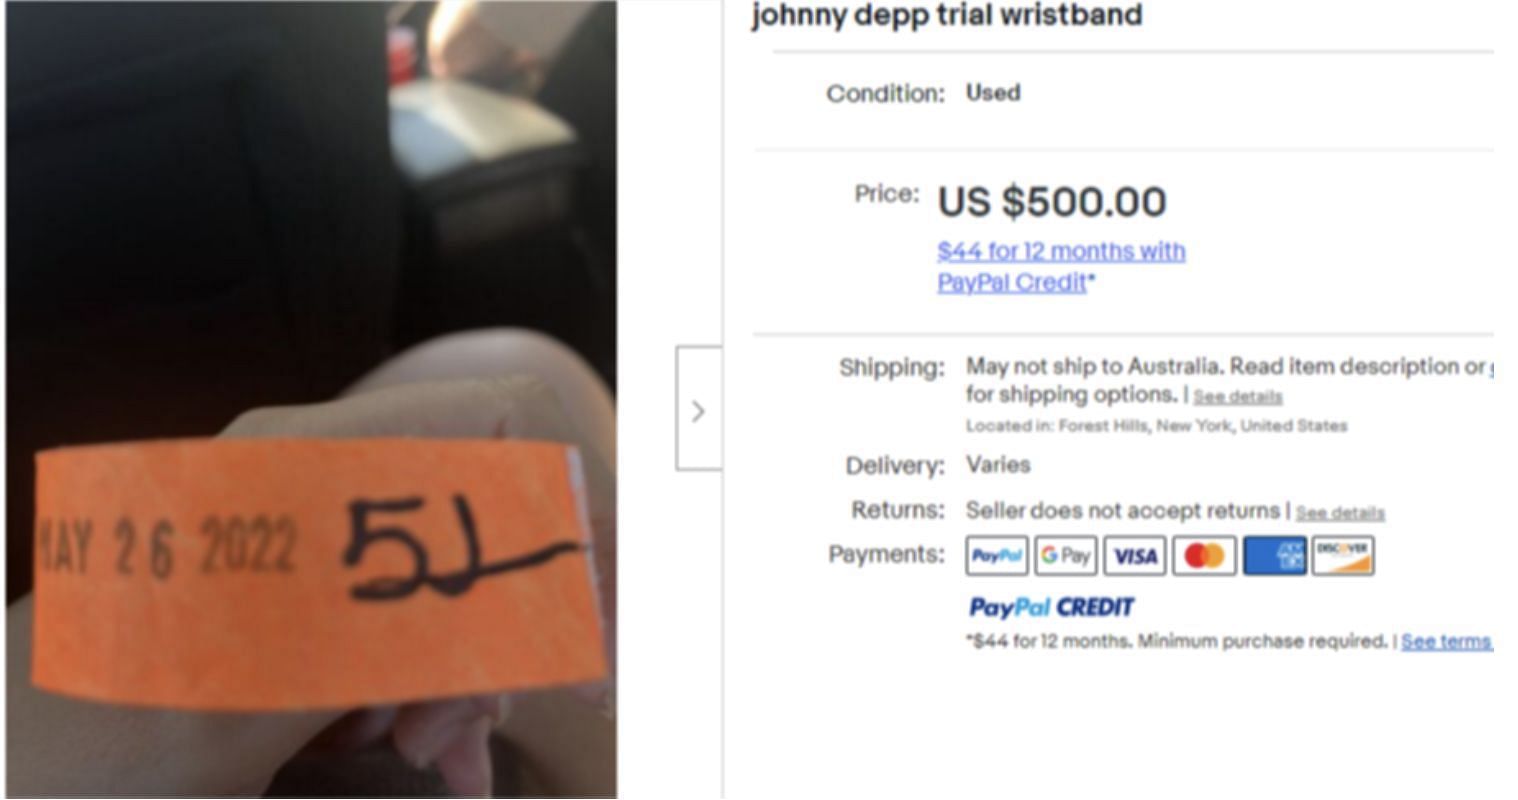 An orange wristband from the Depp v Heard trial (Image via ebay.com)